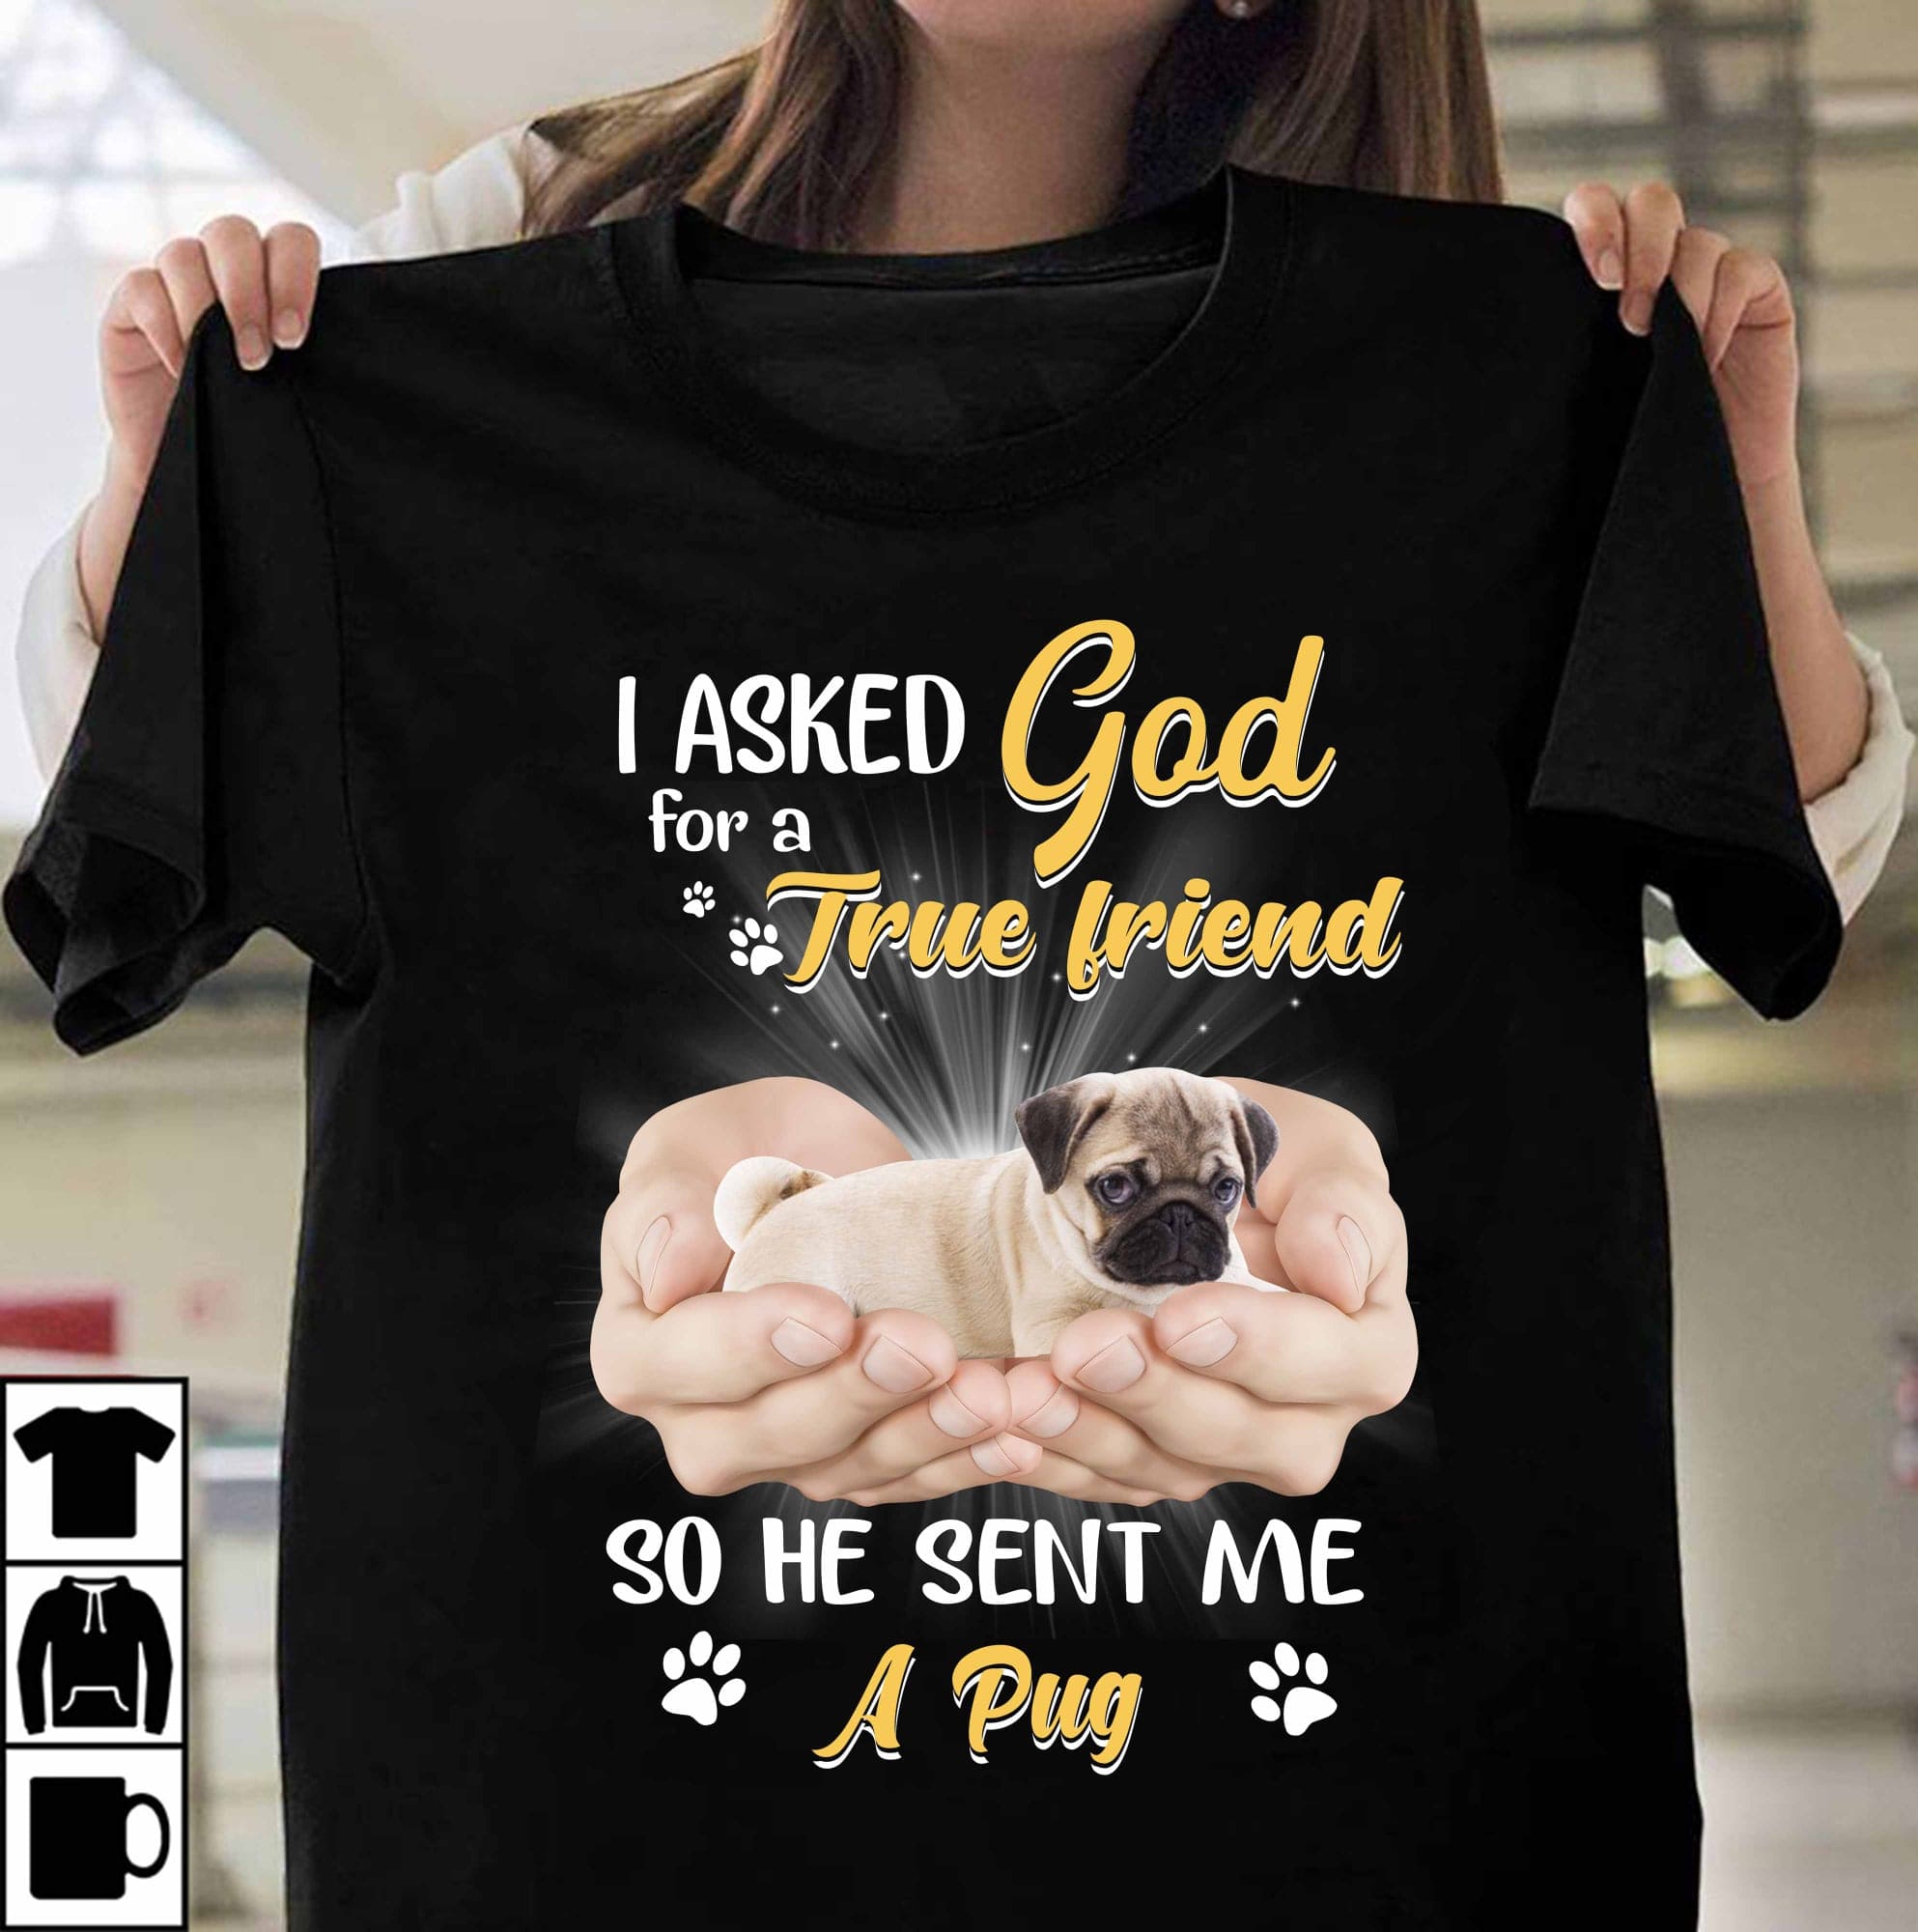 I asked god for a true friend so he sent me a pug - Pug dog, God sent Pug dog